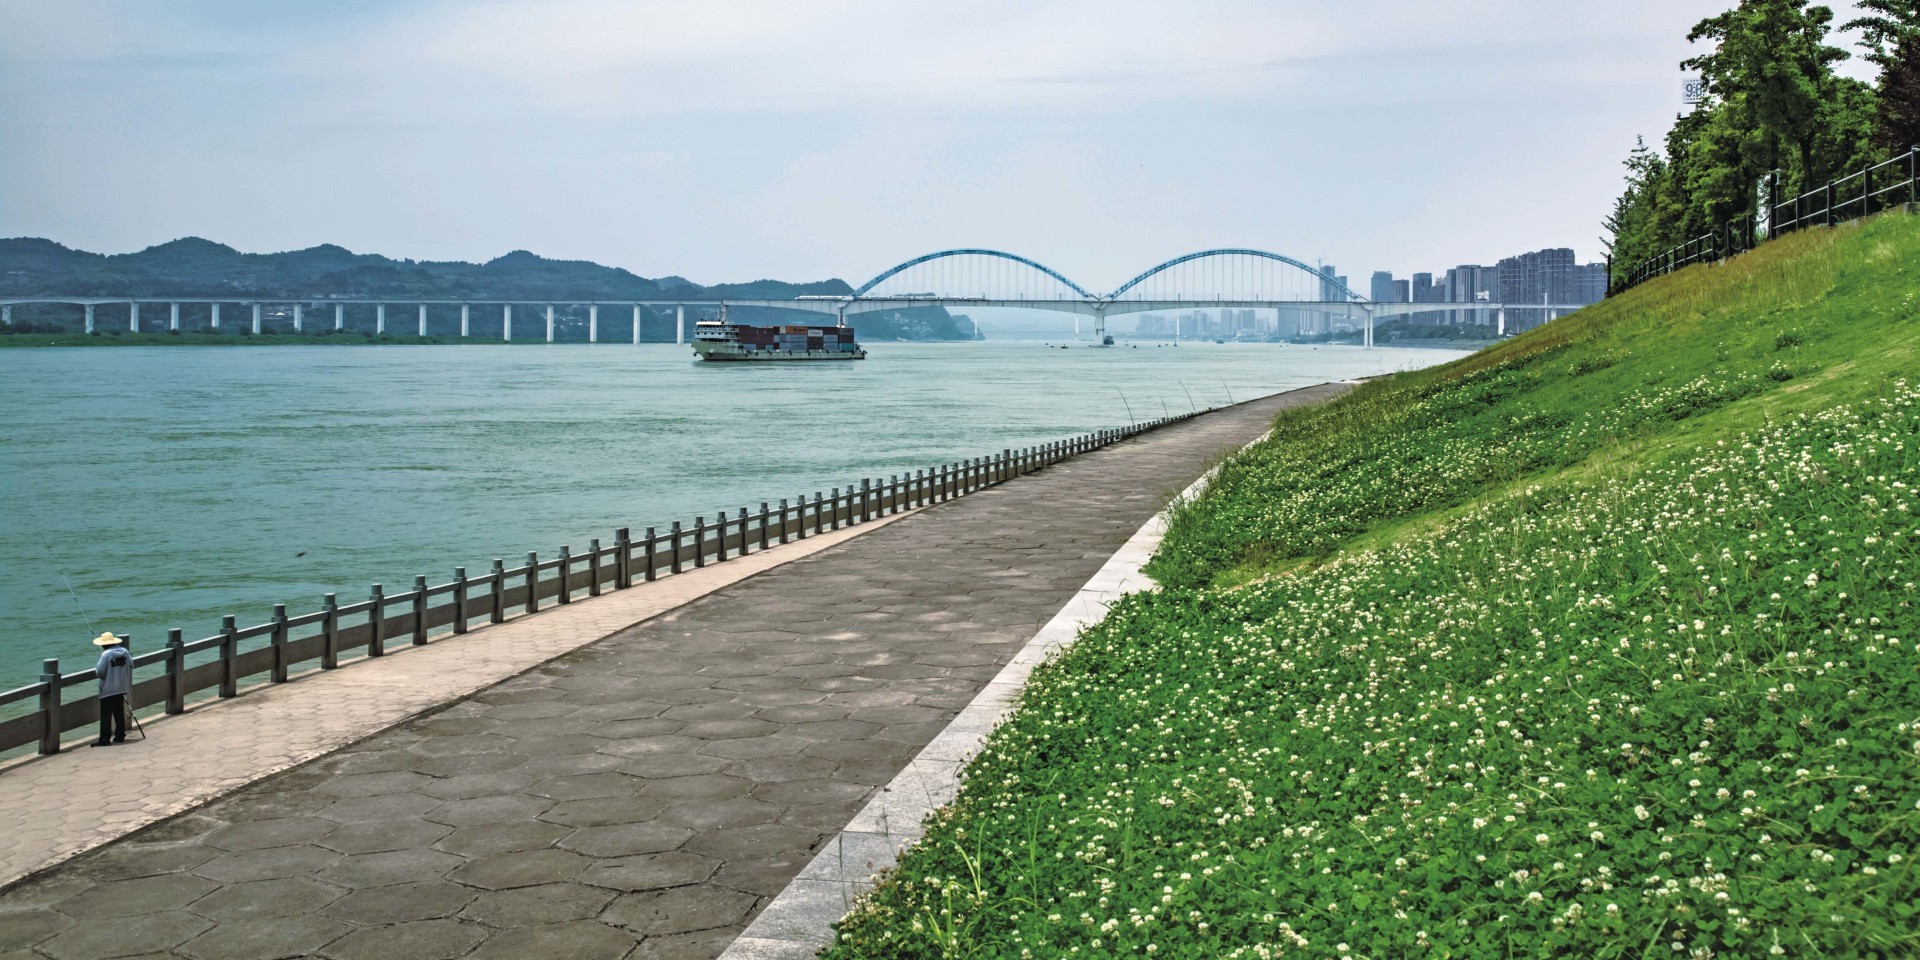 三峡后续工作长江中下游影响处理湖北宜昌段一期河道整治工程